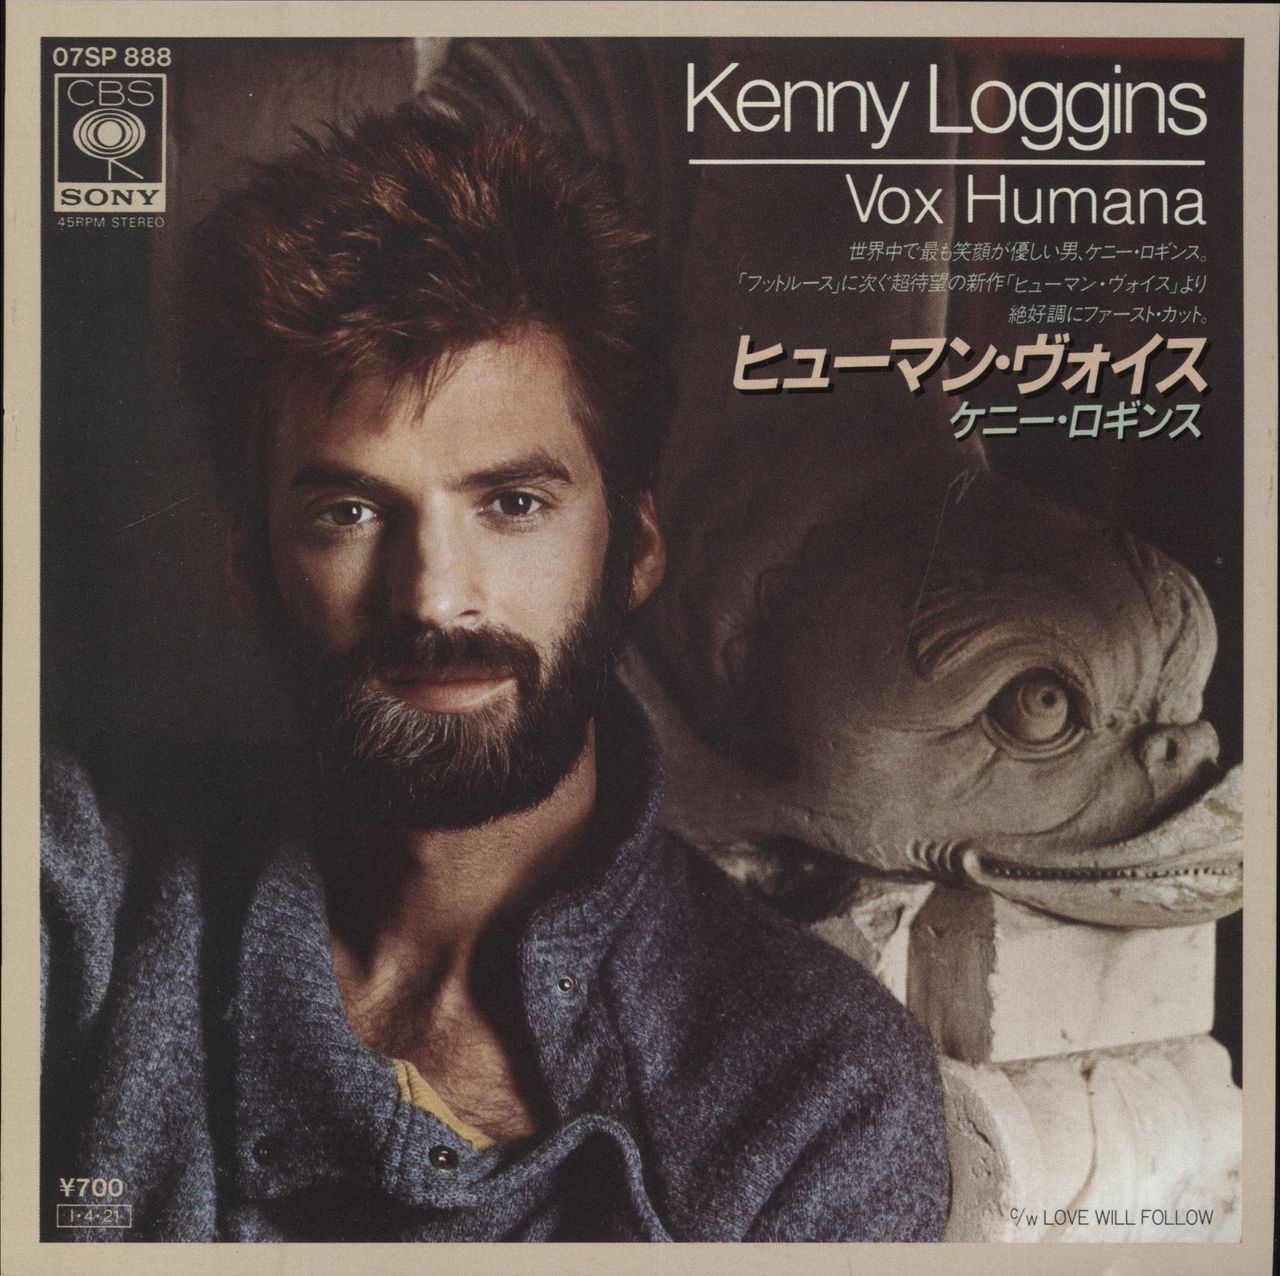 【美品】KENNY LOGGINS LP ”VOX HUMANA”